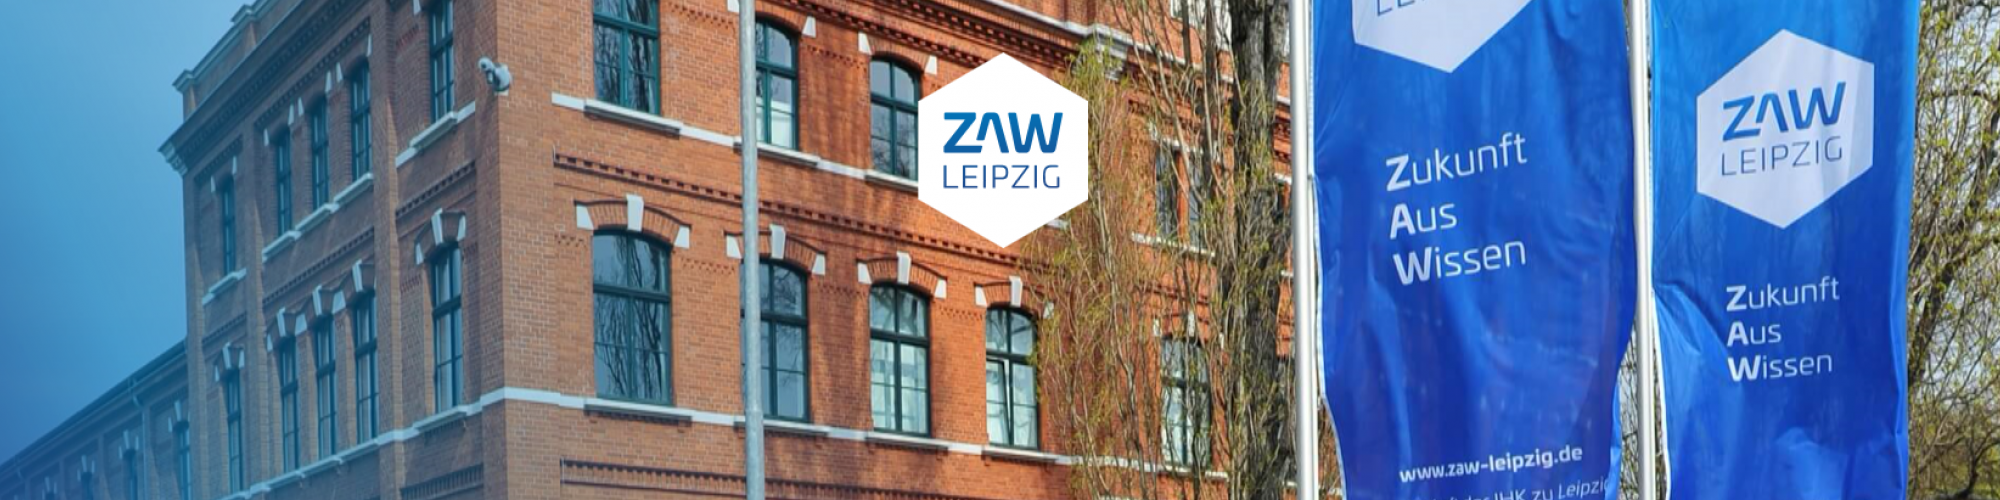 ZAW Zentrum für Aus- und Weiterbildung Leipzig GmbH